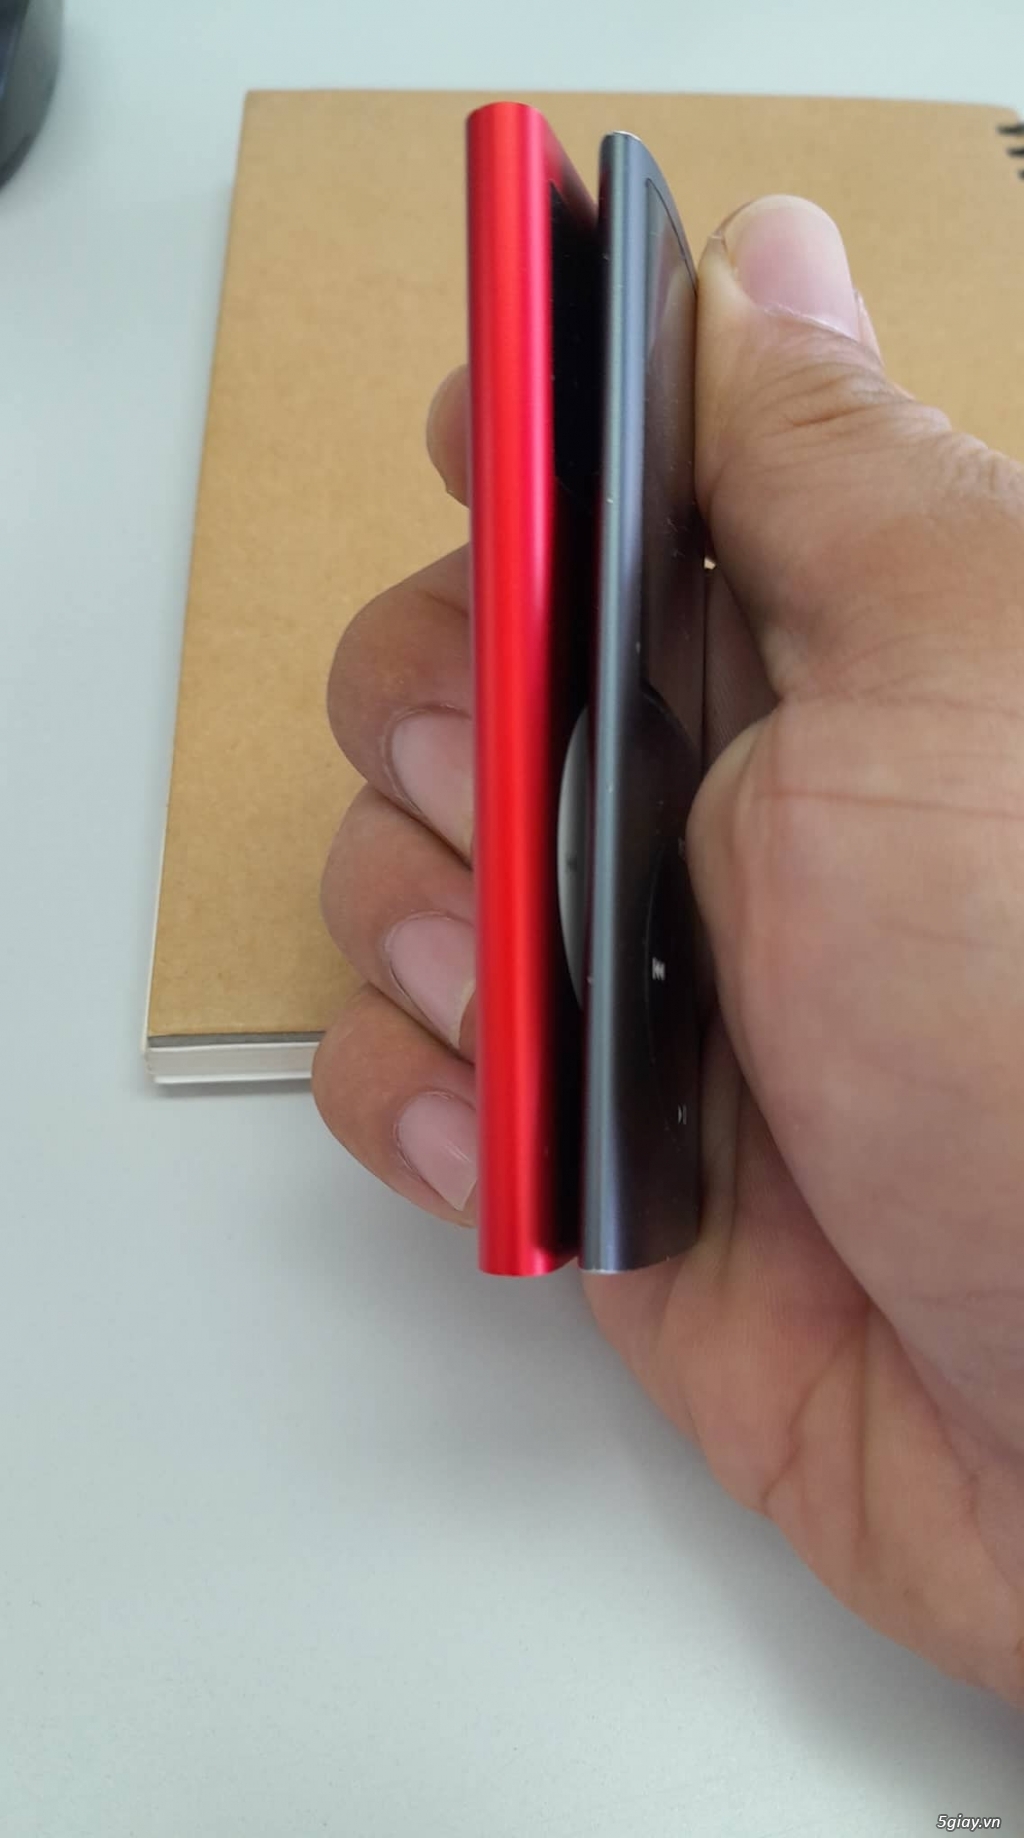 Ipod Red Product 4GB và Ipod Legion 16GB - Phải cắm sạc để sử dụng - 4